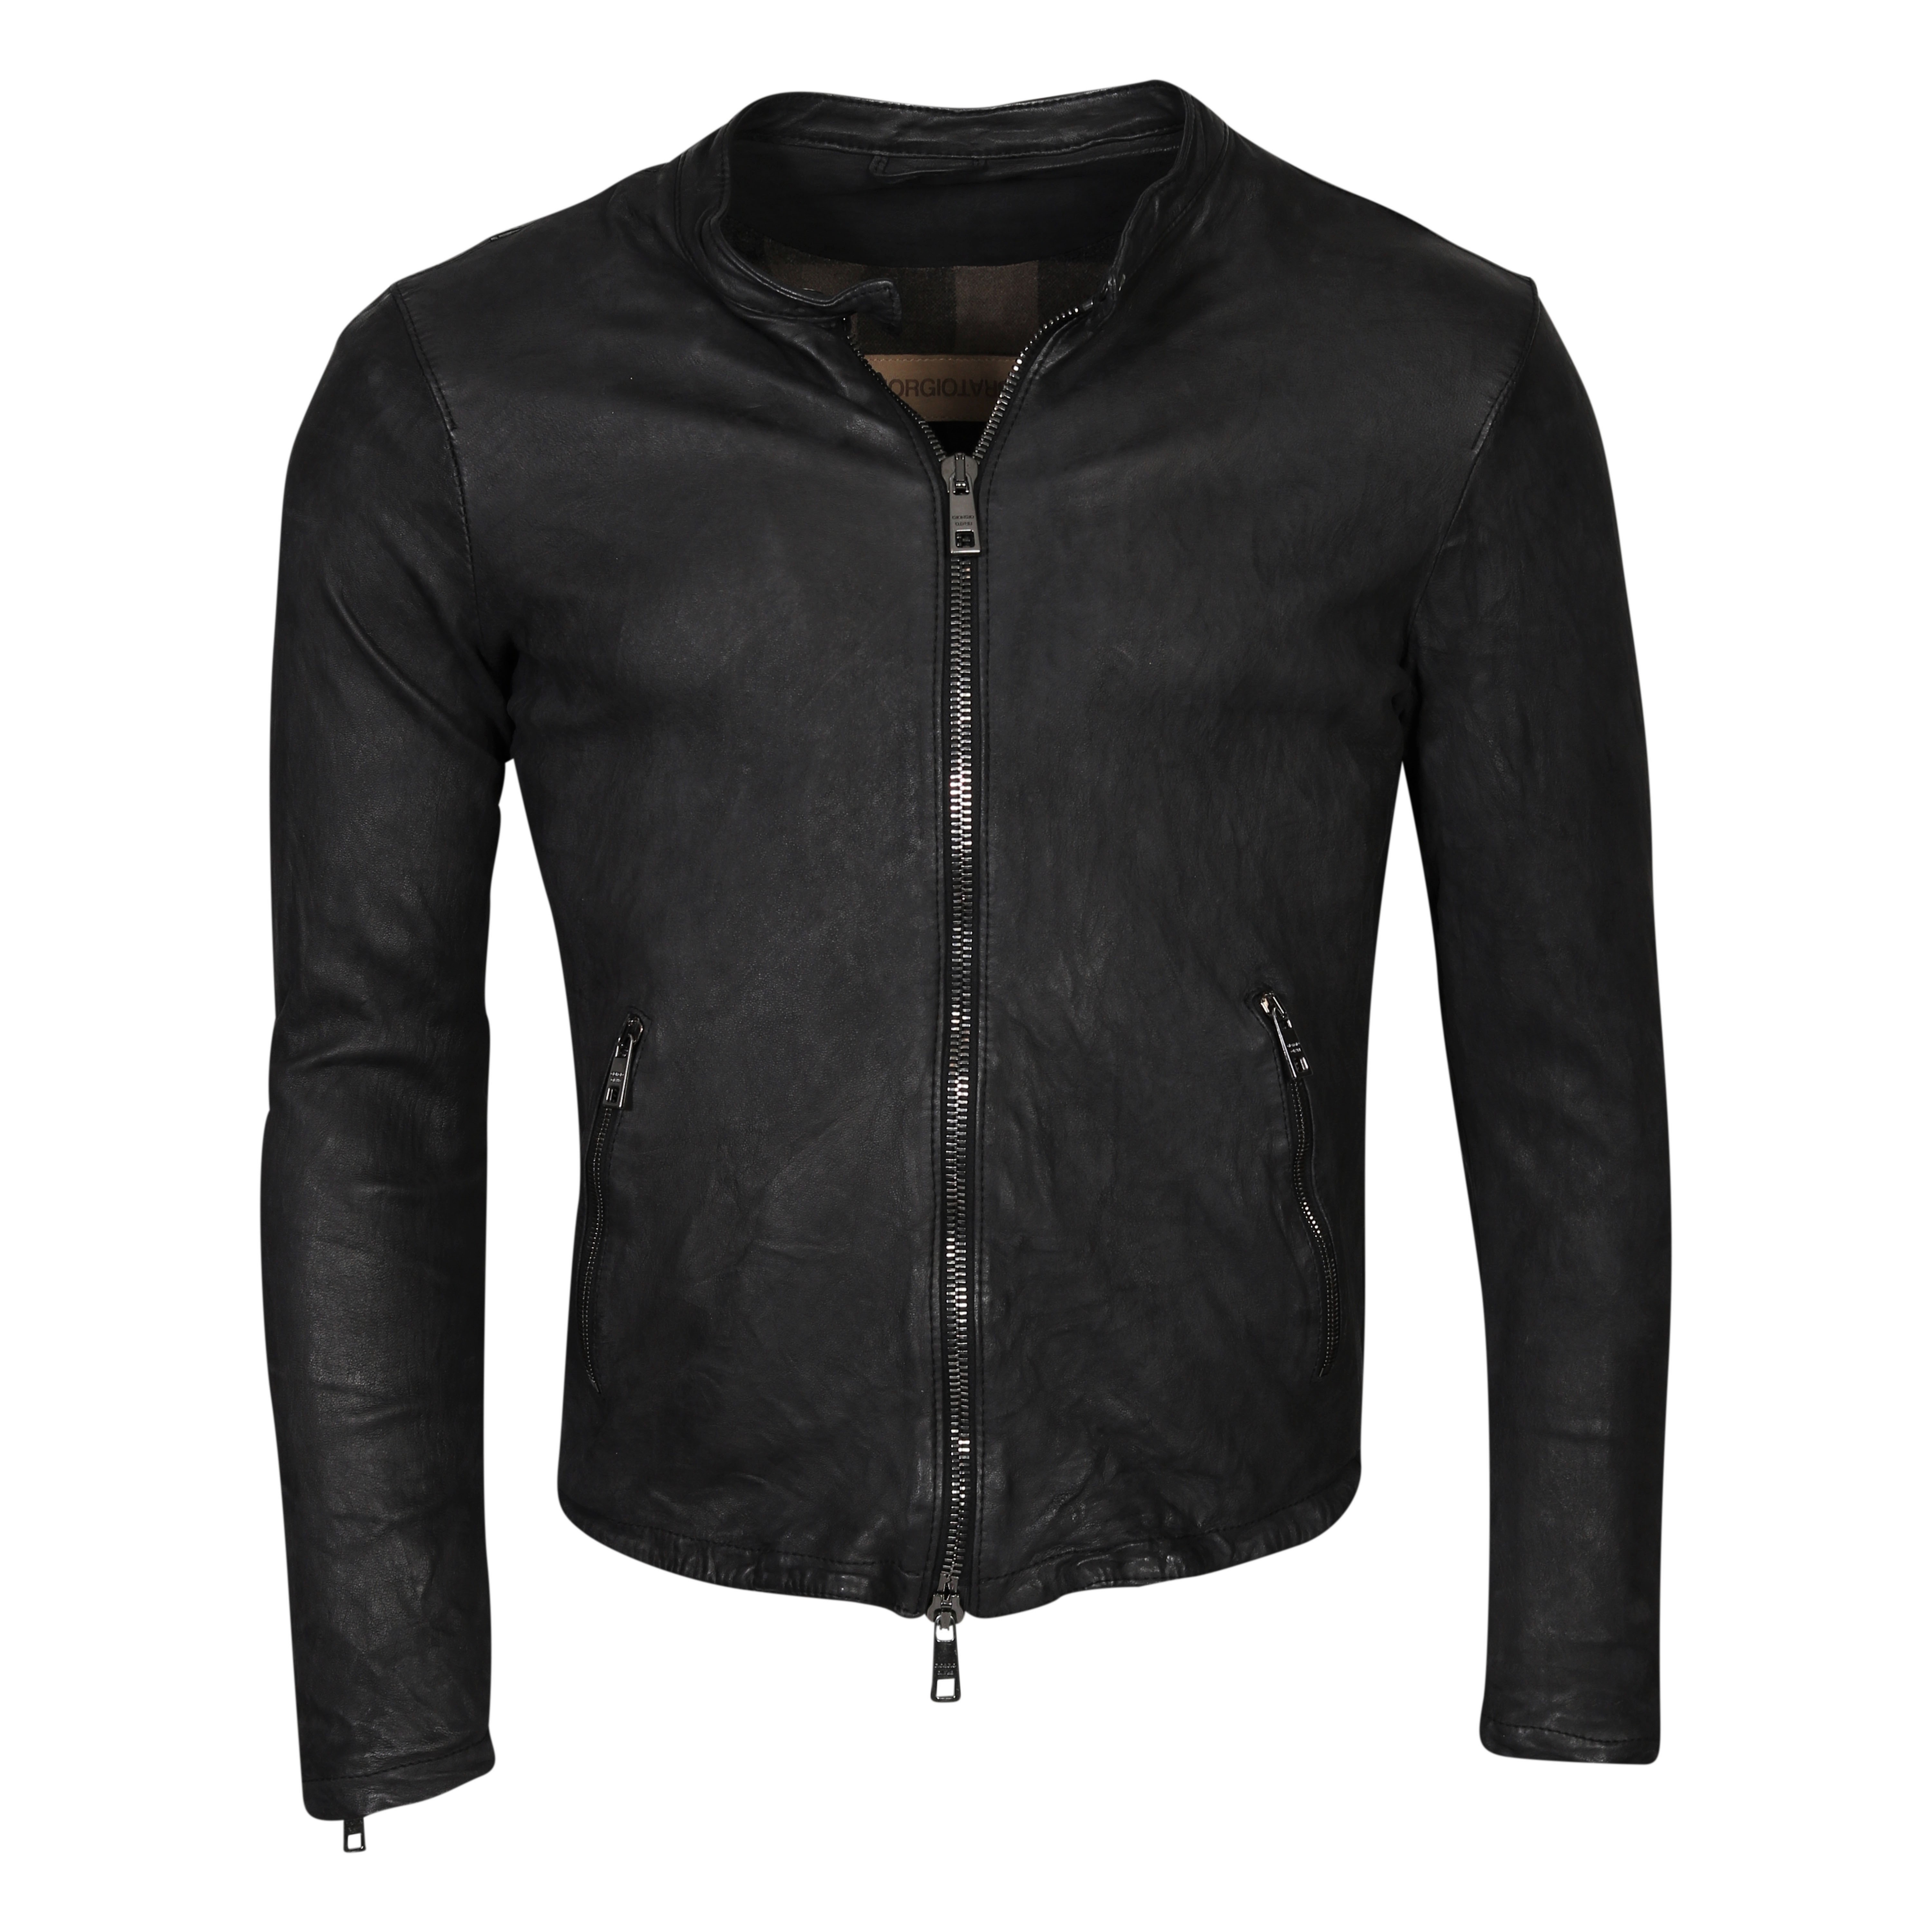 Giorgio Brato Leather Jacket Washed Black 46